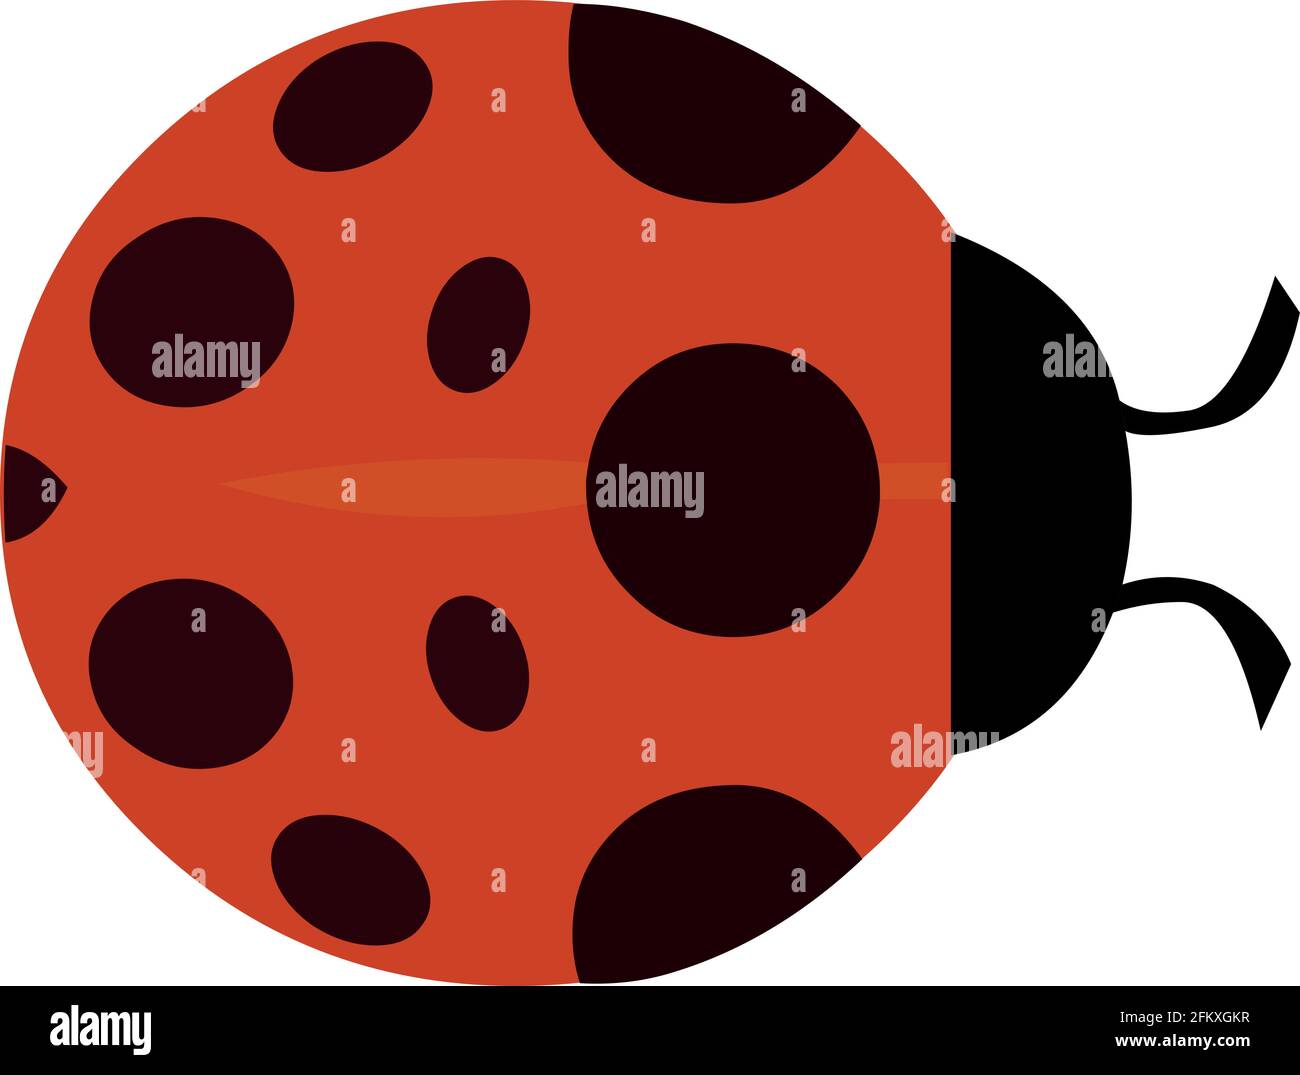 Illustrazione vettoriale di emoticon di un ladybug Illustrazione Vettoriale